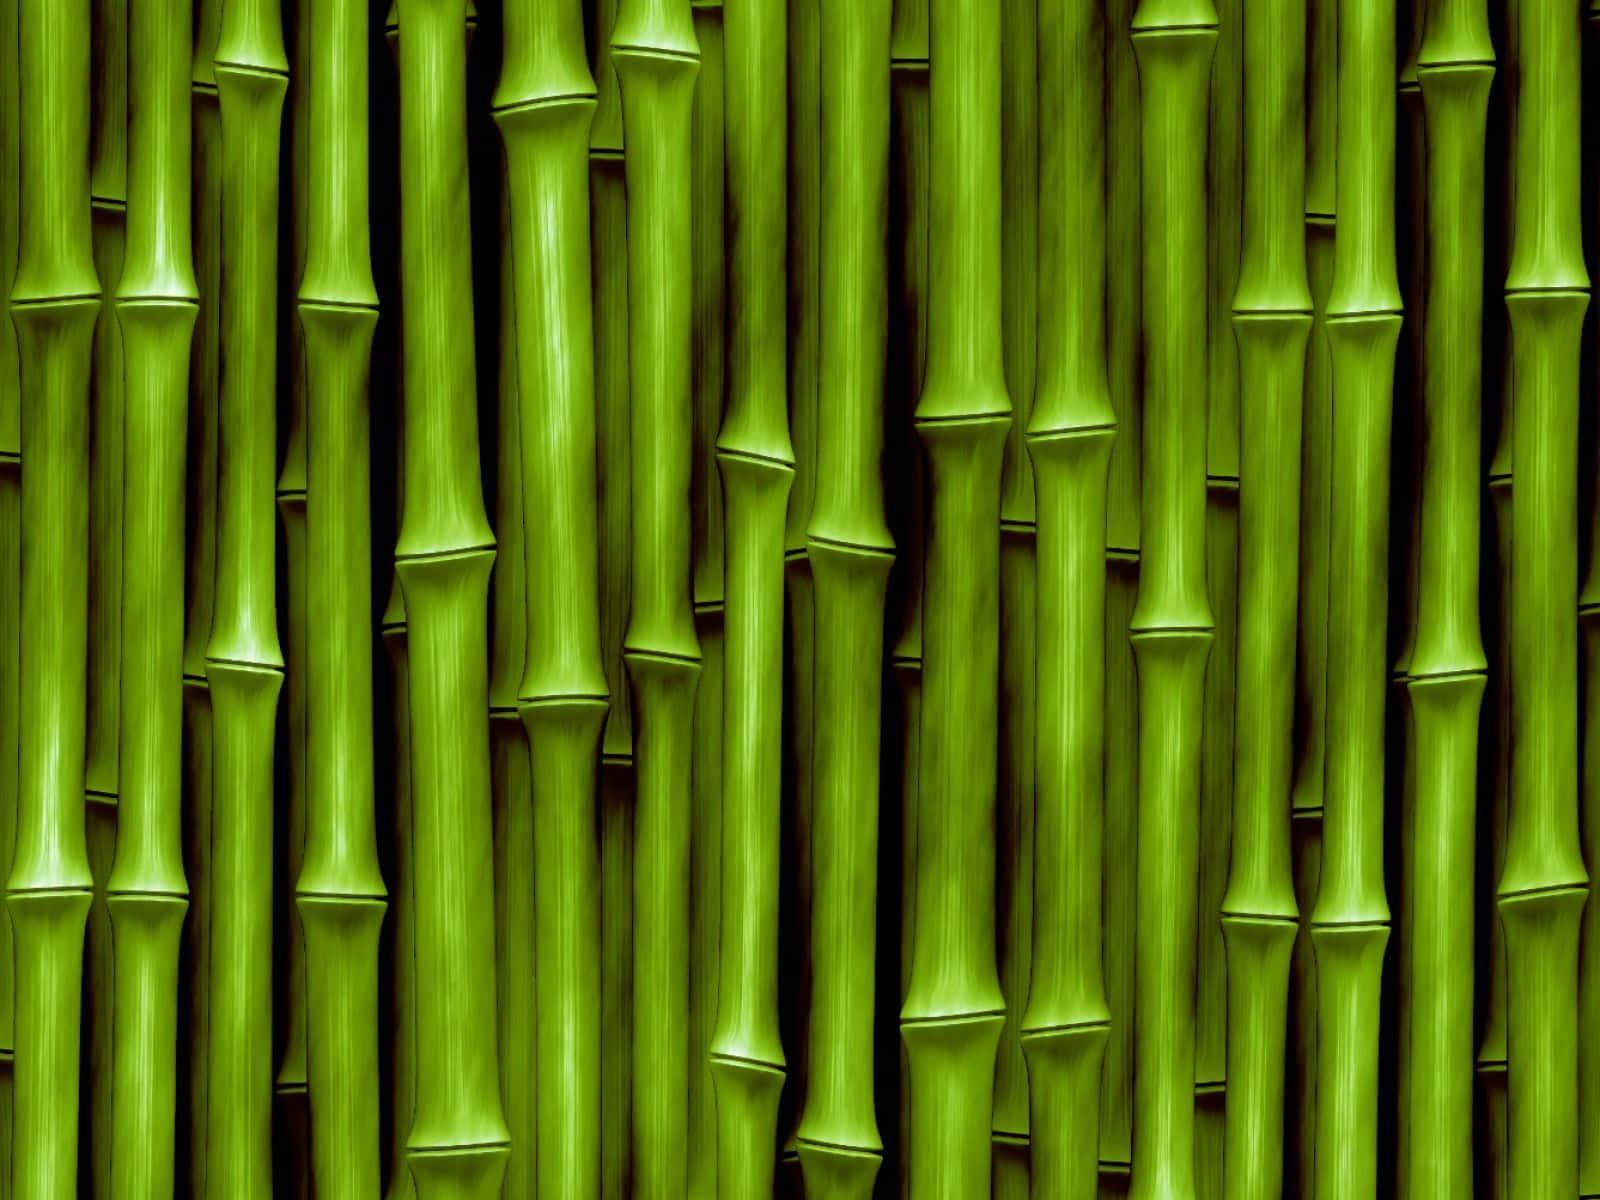 Papelde Parede De Talos De Bambu - Impressão De Arte Em Papel De Parede De Talos De Bambu Papel de Parede